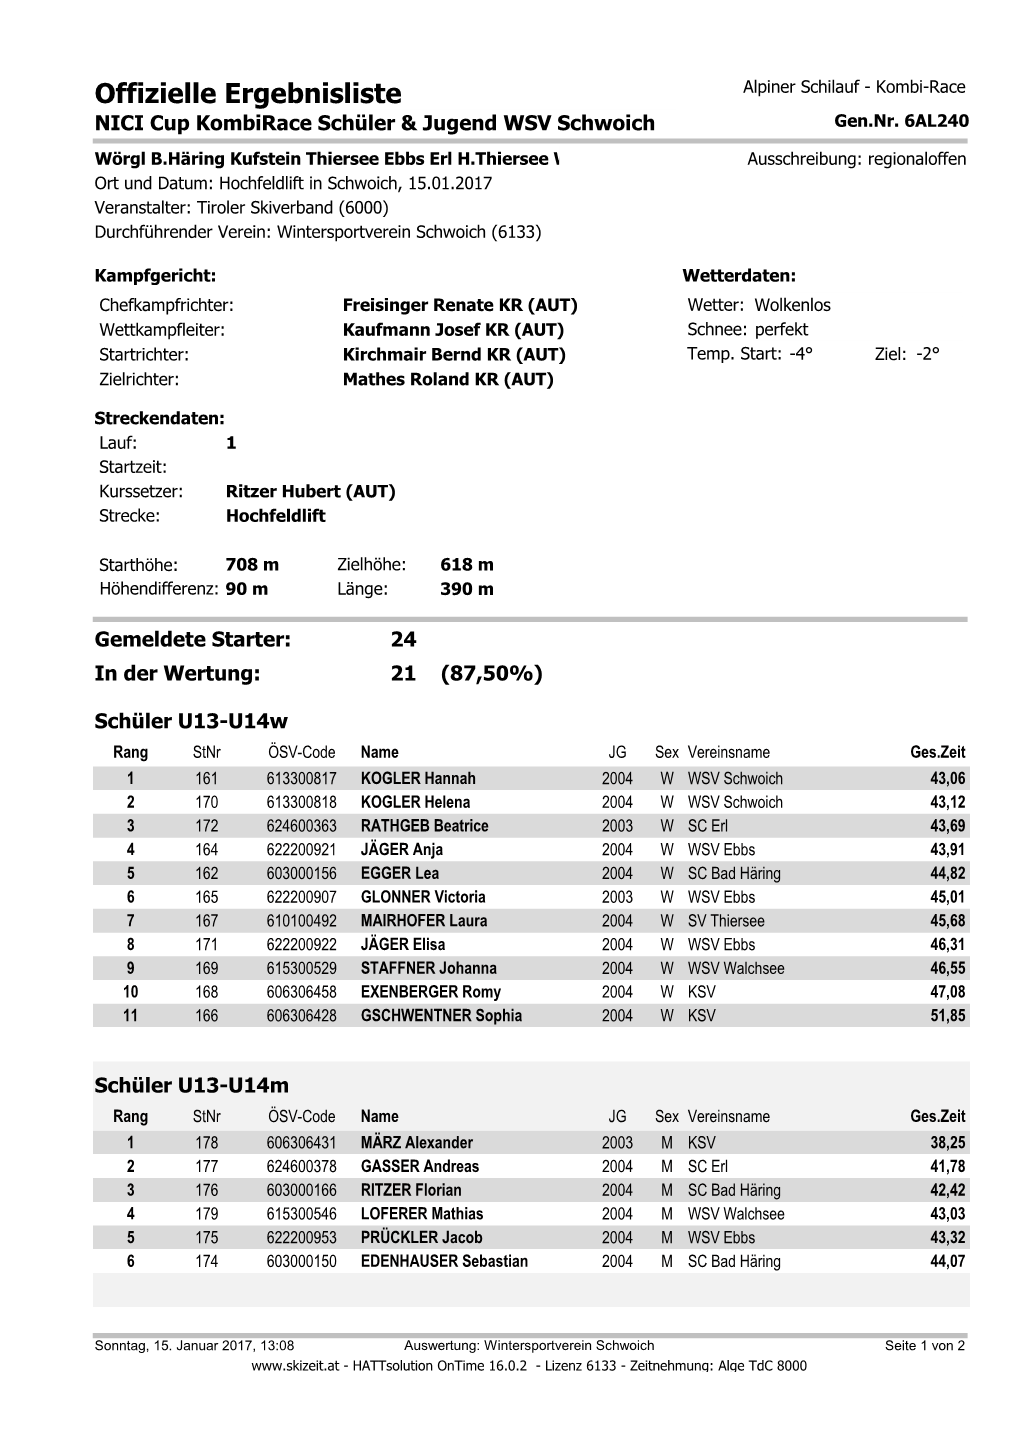 Offizielle Ergebnisliste Alpiner Schilauf - Kombi-Race NICI Cup Kombirace Schüler & Jugend WSV Schwoich Gen.Nr